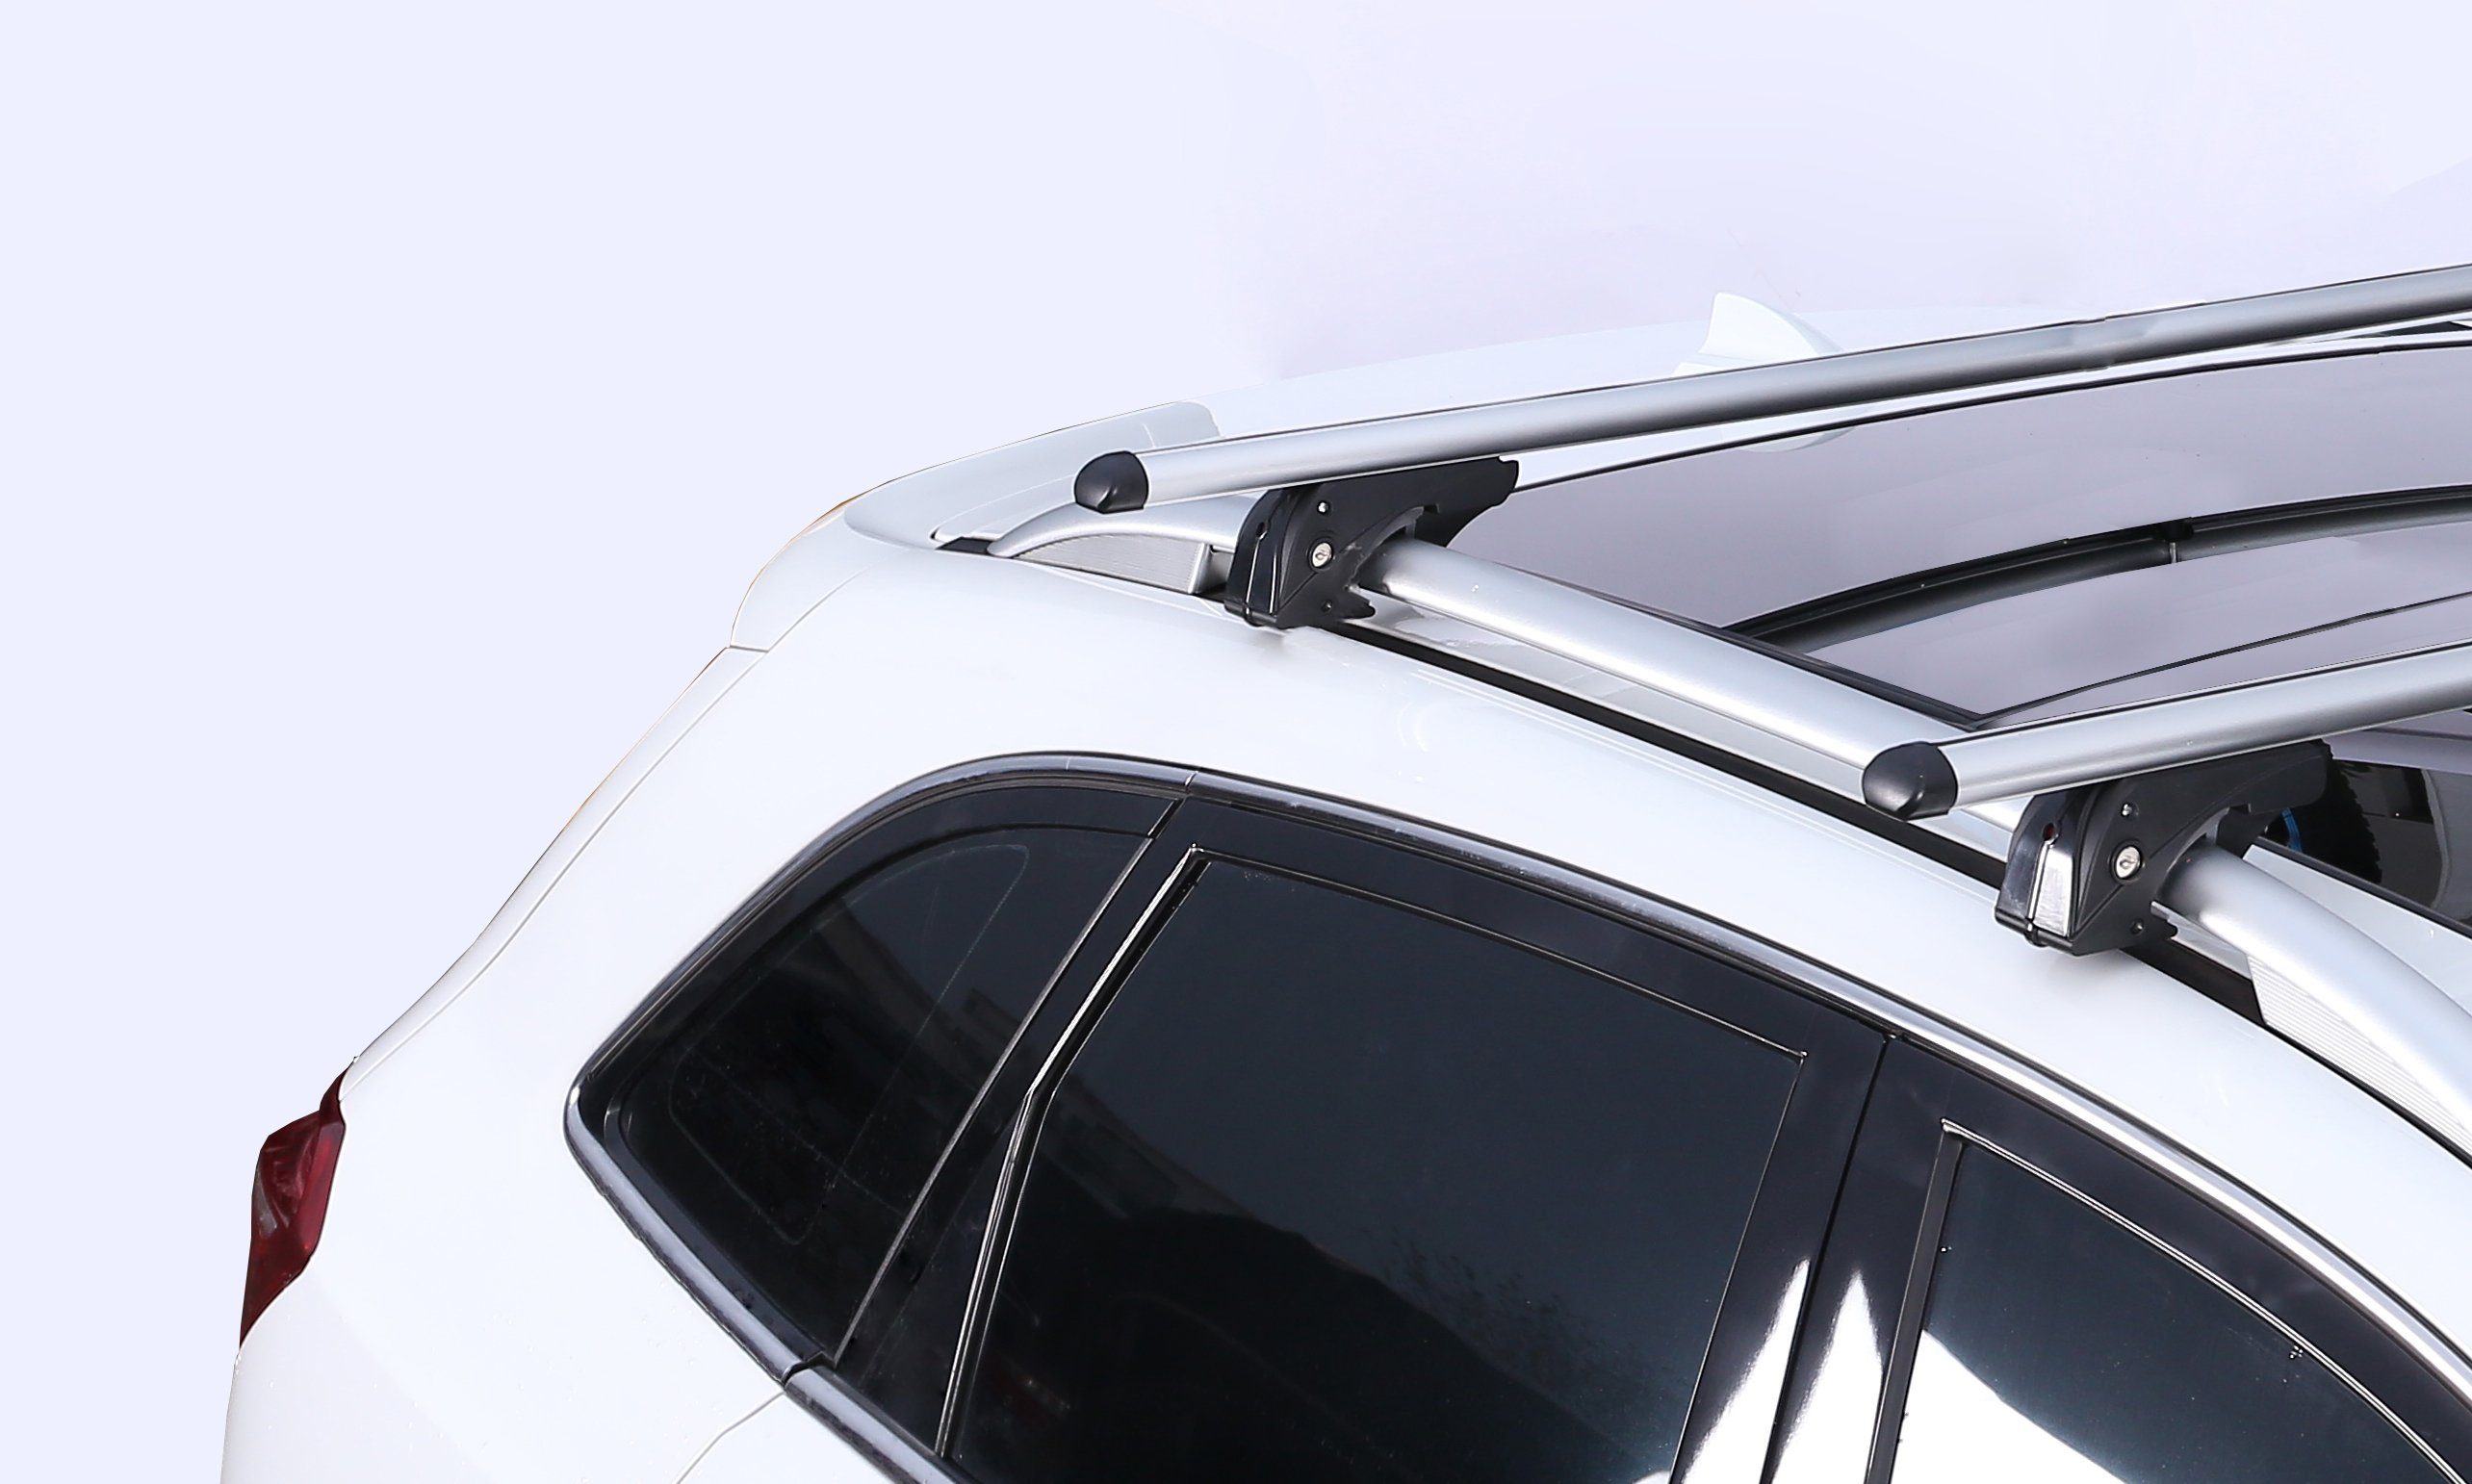 Dachbox (5 und Set), XC70 VDPLION2 Volvo Dachträger/Relingträger Dachbox, Dachbox/Gepäckbox Ihren Volvo VDP im Dachträger (Für (5 CUBE470 Türer) Türer) mit + 08-16, XC70 08-16 kompatibel